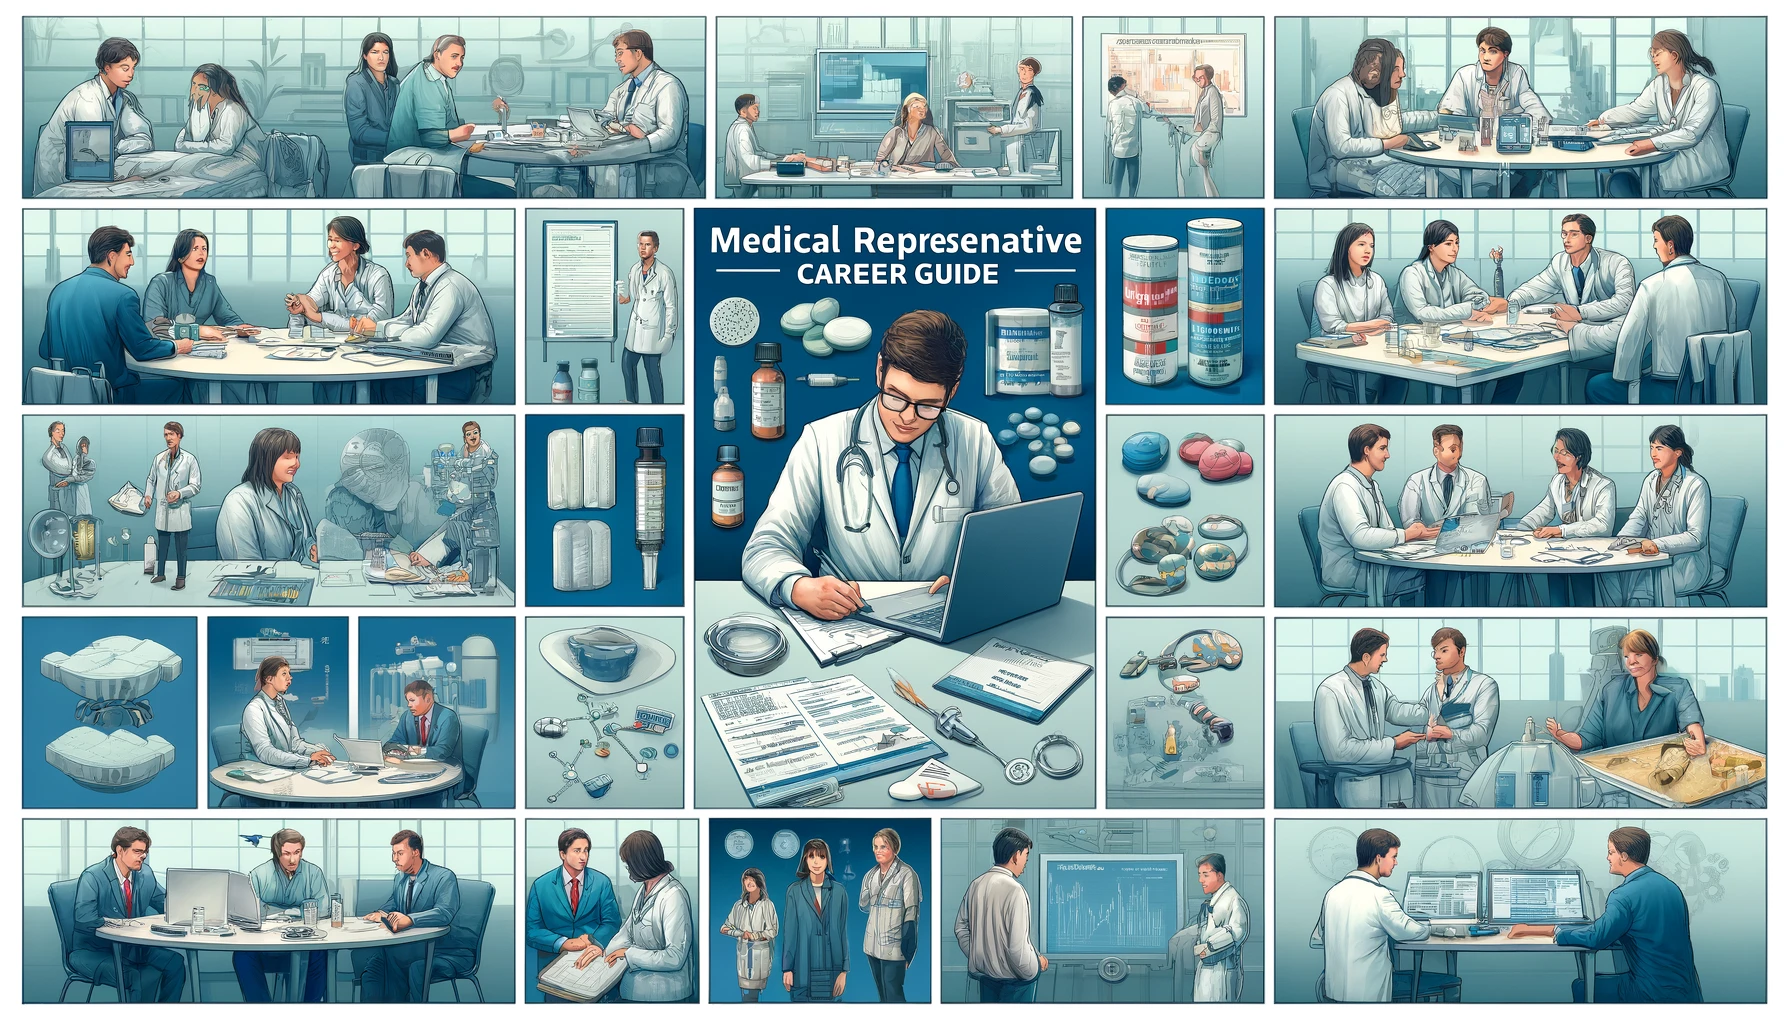 Medical representative career guide